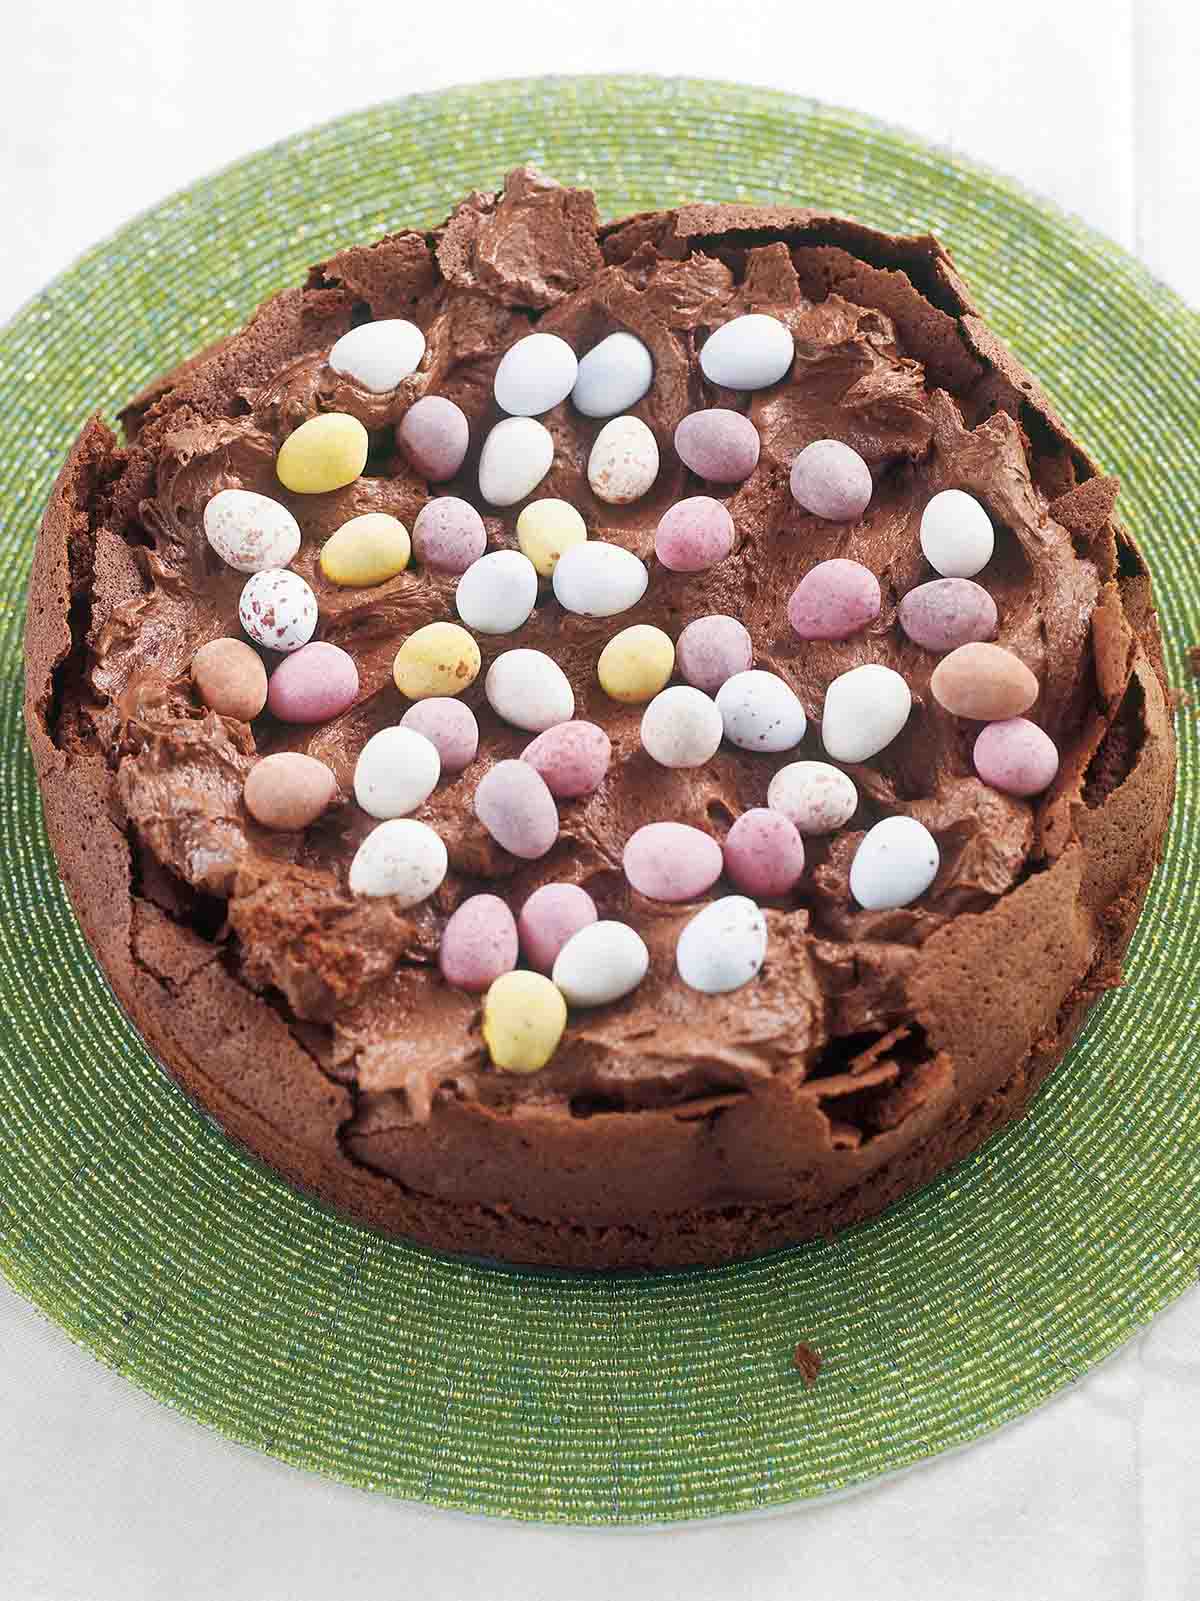 Easter Egg Nest Cake